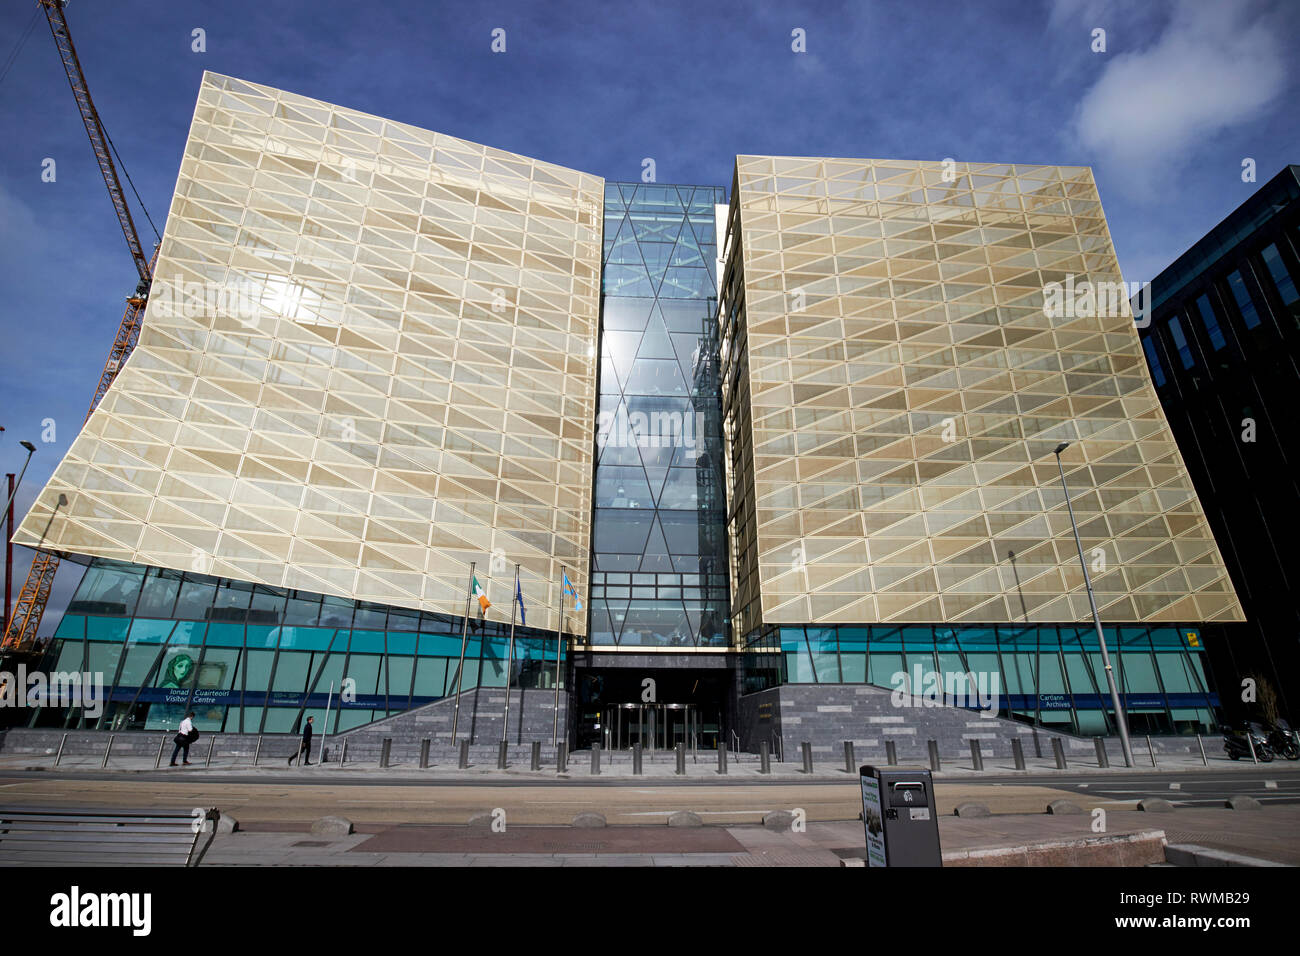 La Banque centrale d'Irlande siège social sur la rue wapping nouveau North Wall Quay Dublin République d'Irlande Banque D'Images